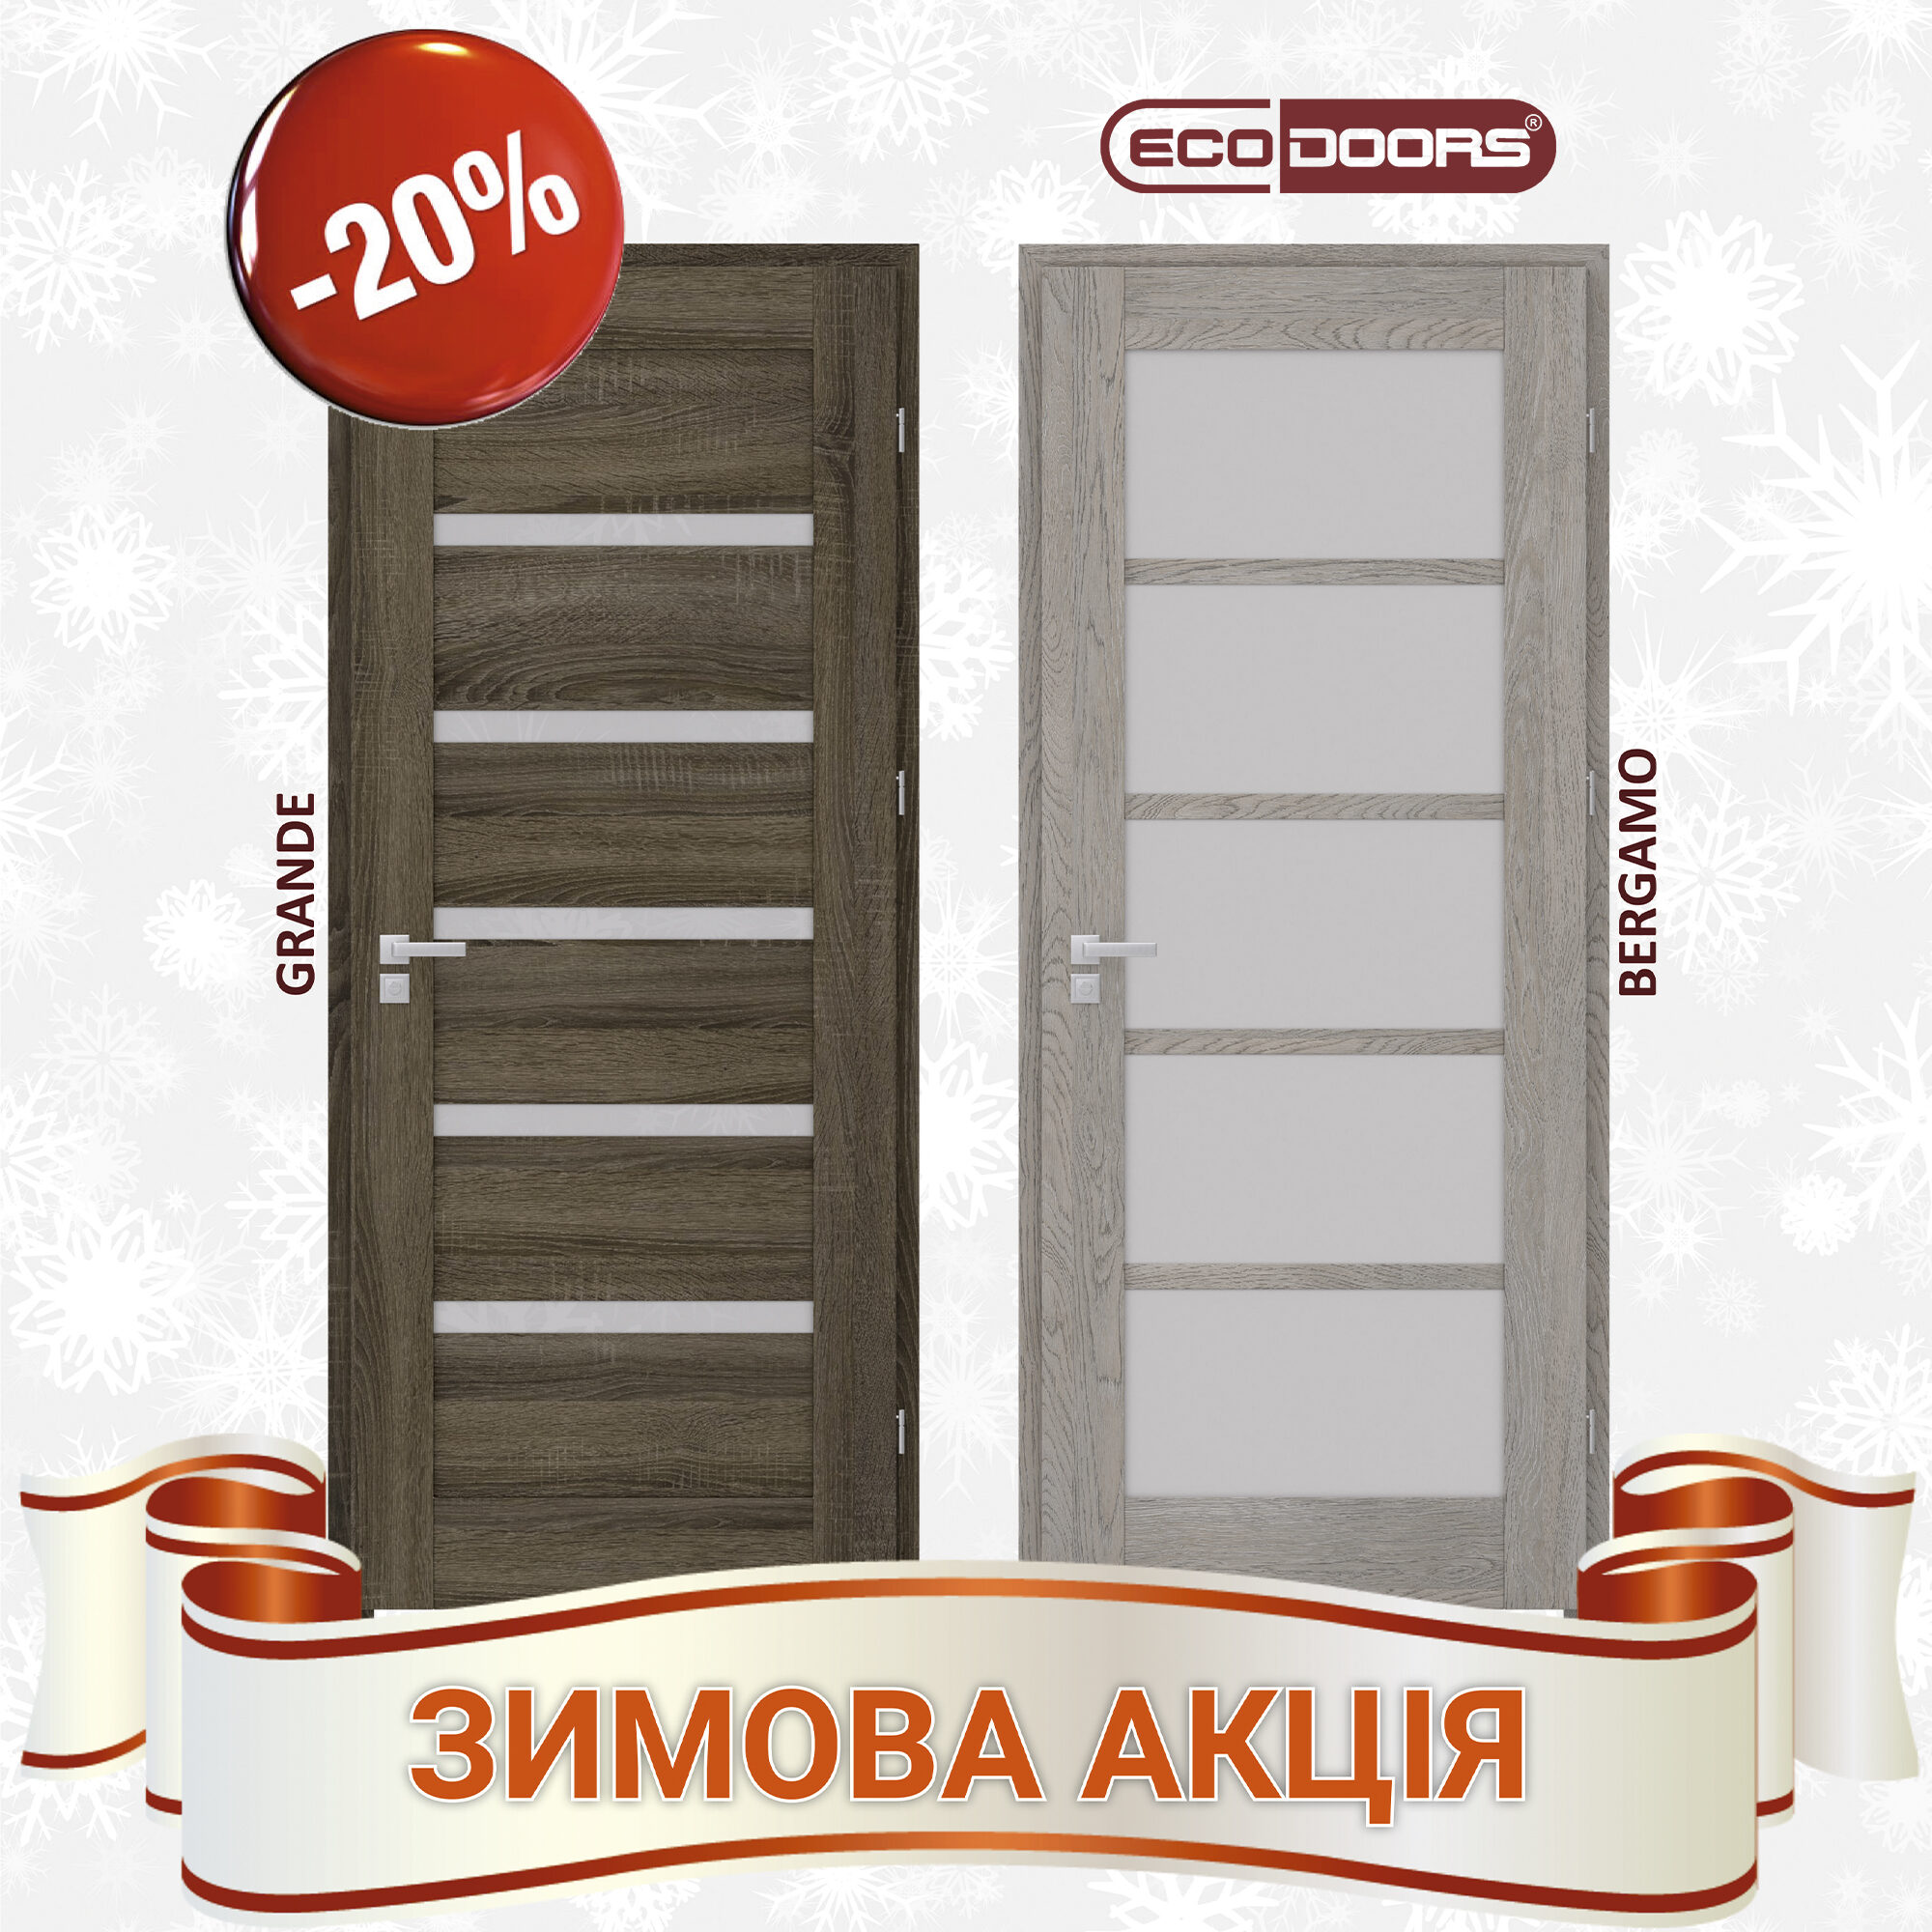 28.02.22 Двери «Ecodoors»